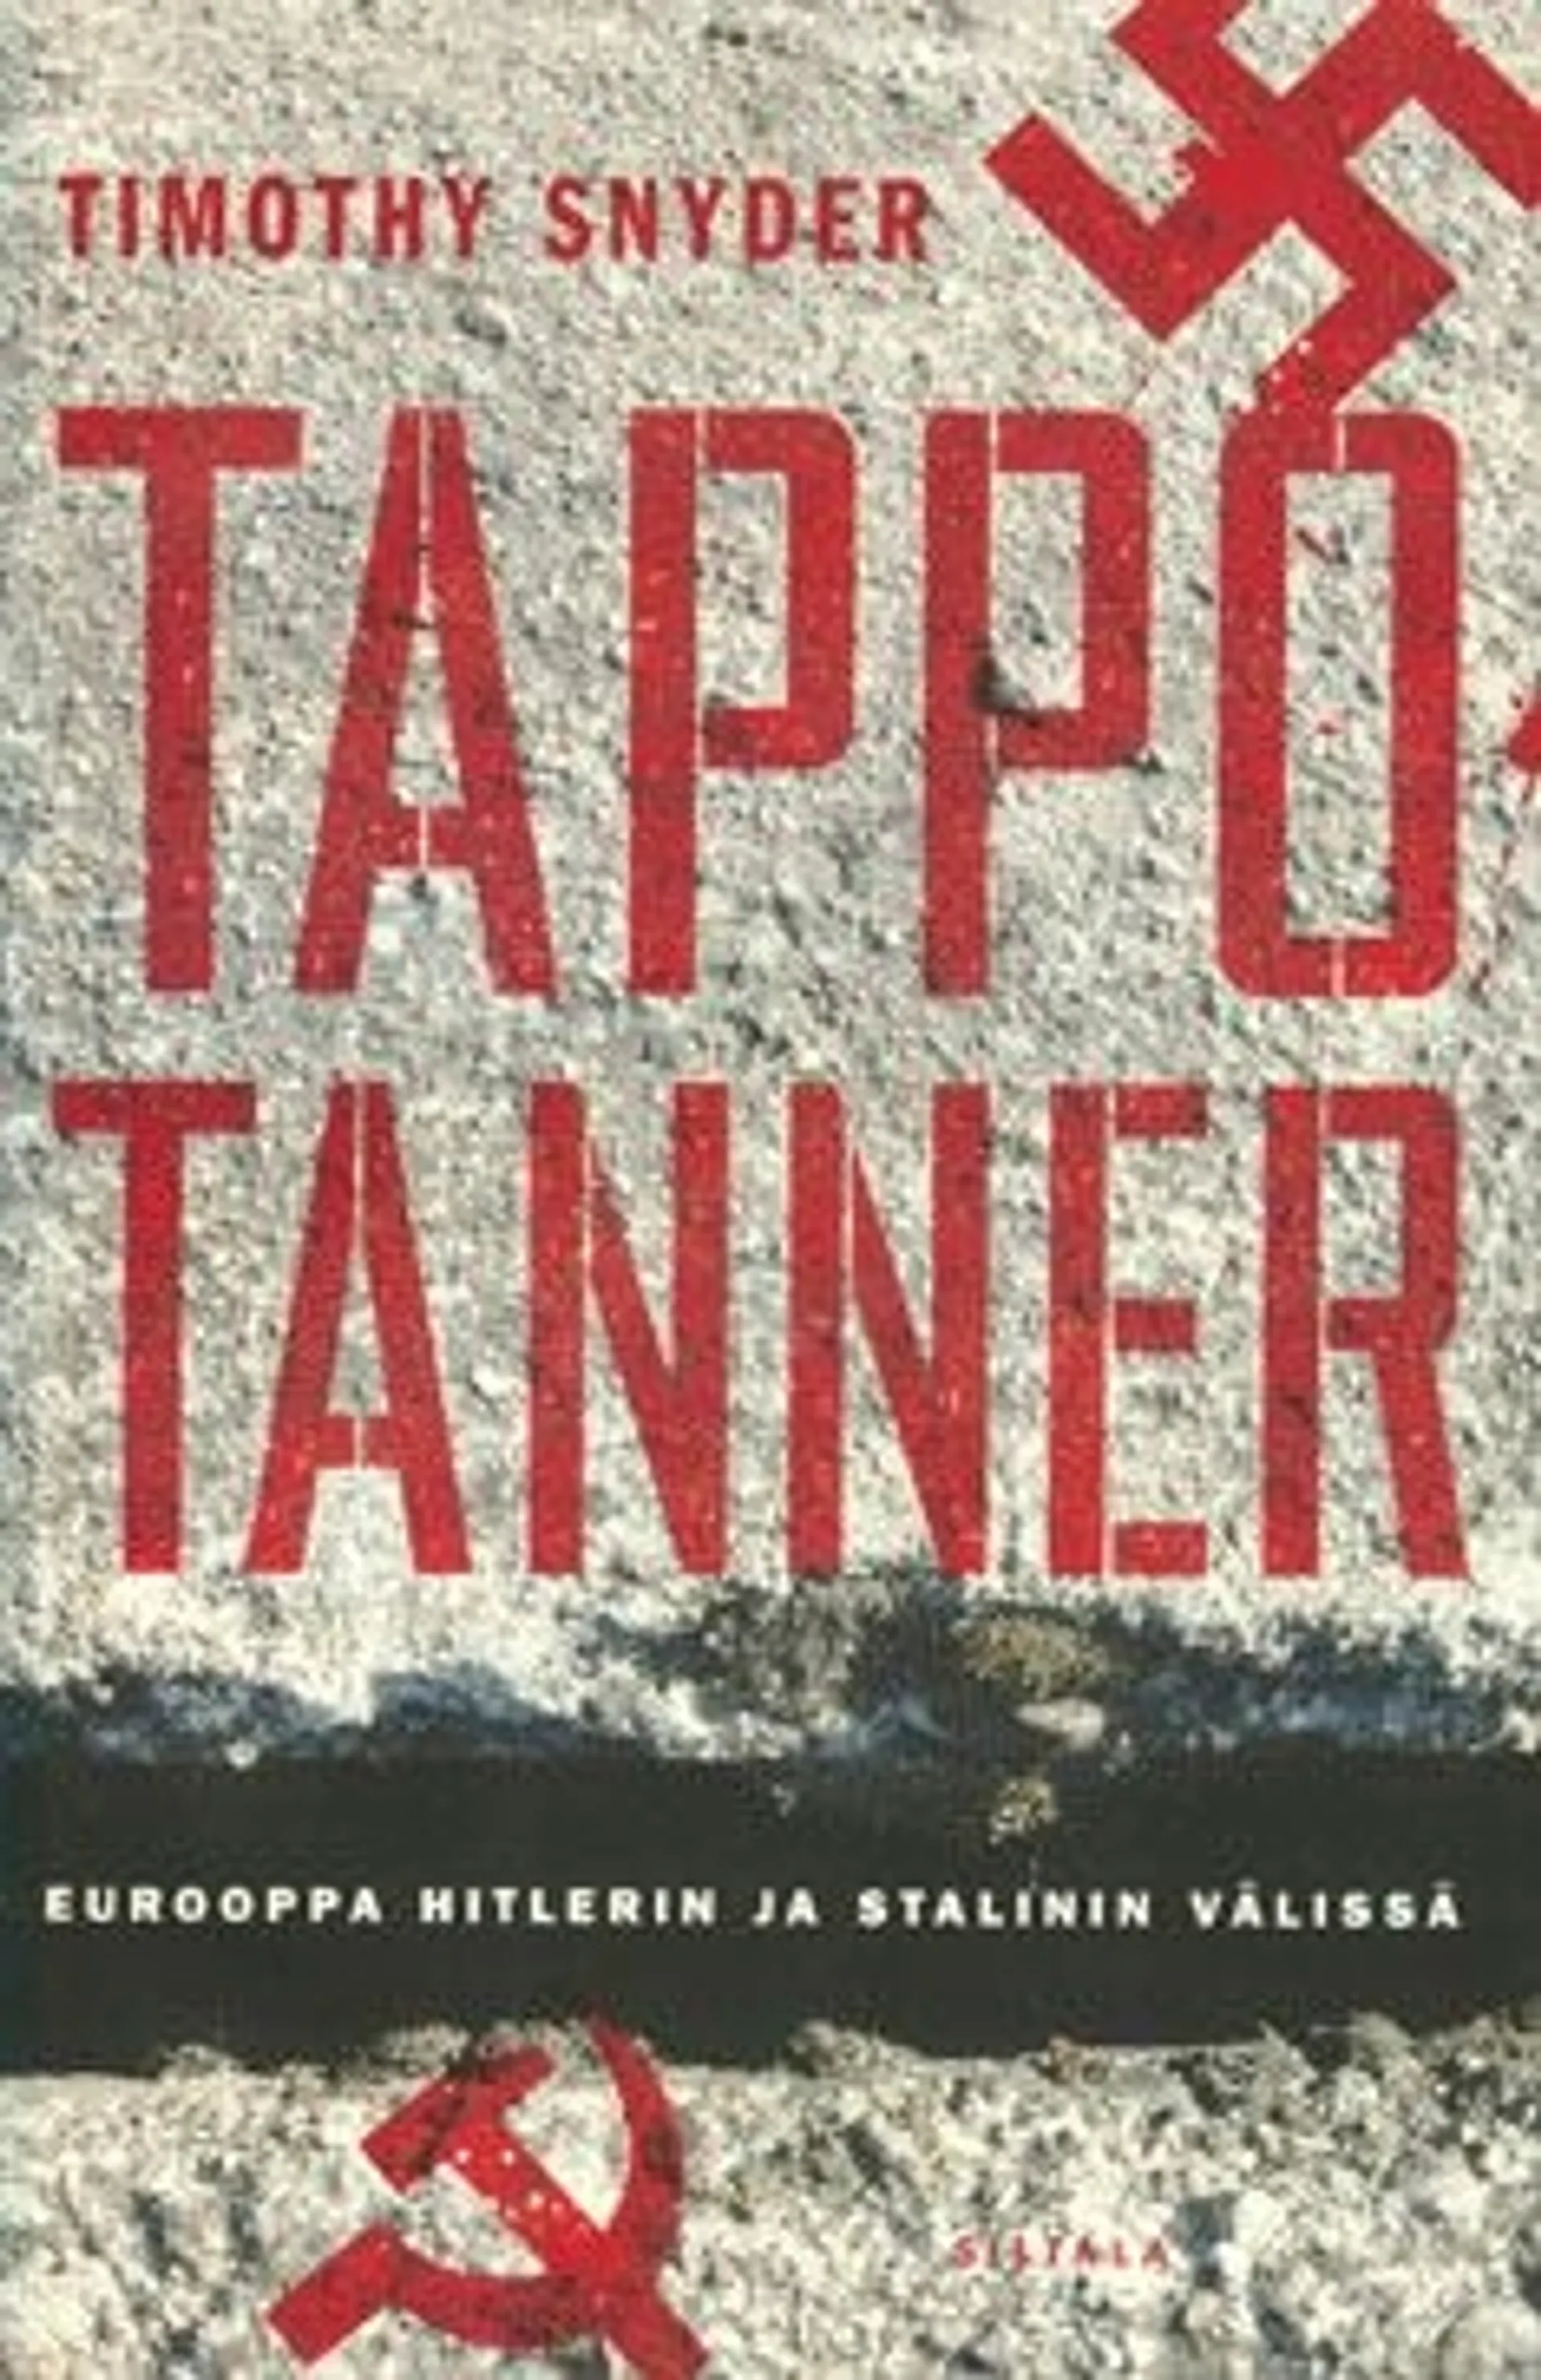 Snyder, Tappotanner - Eurooppa Hitlerin ja Stalinin välissä